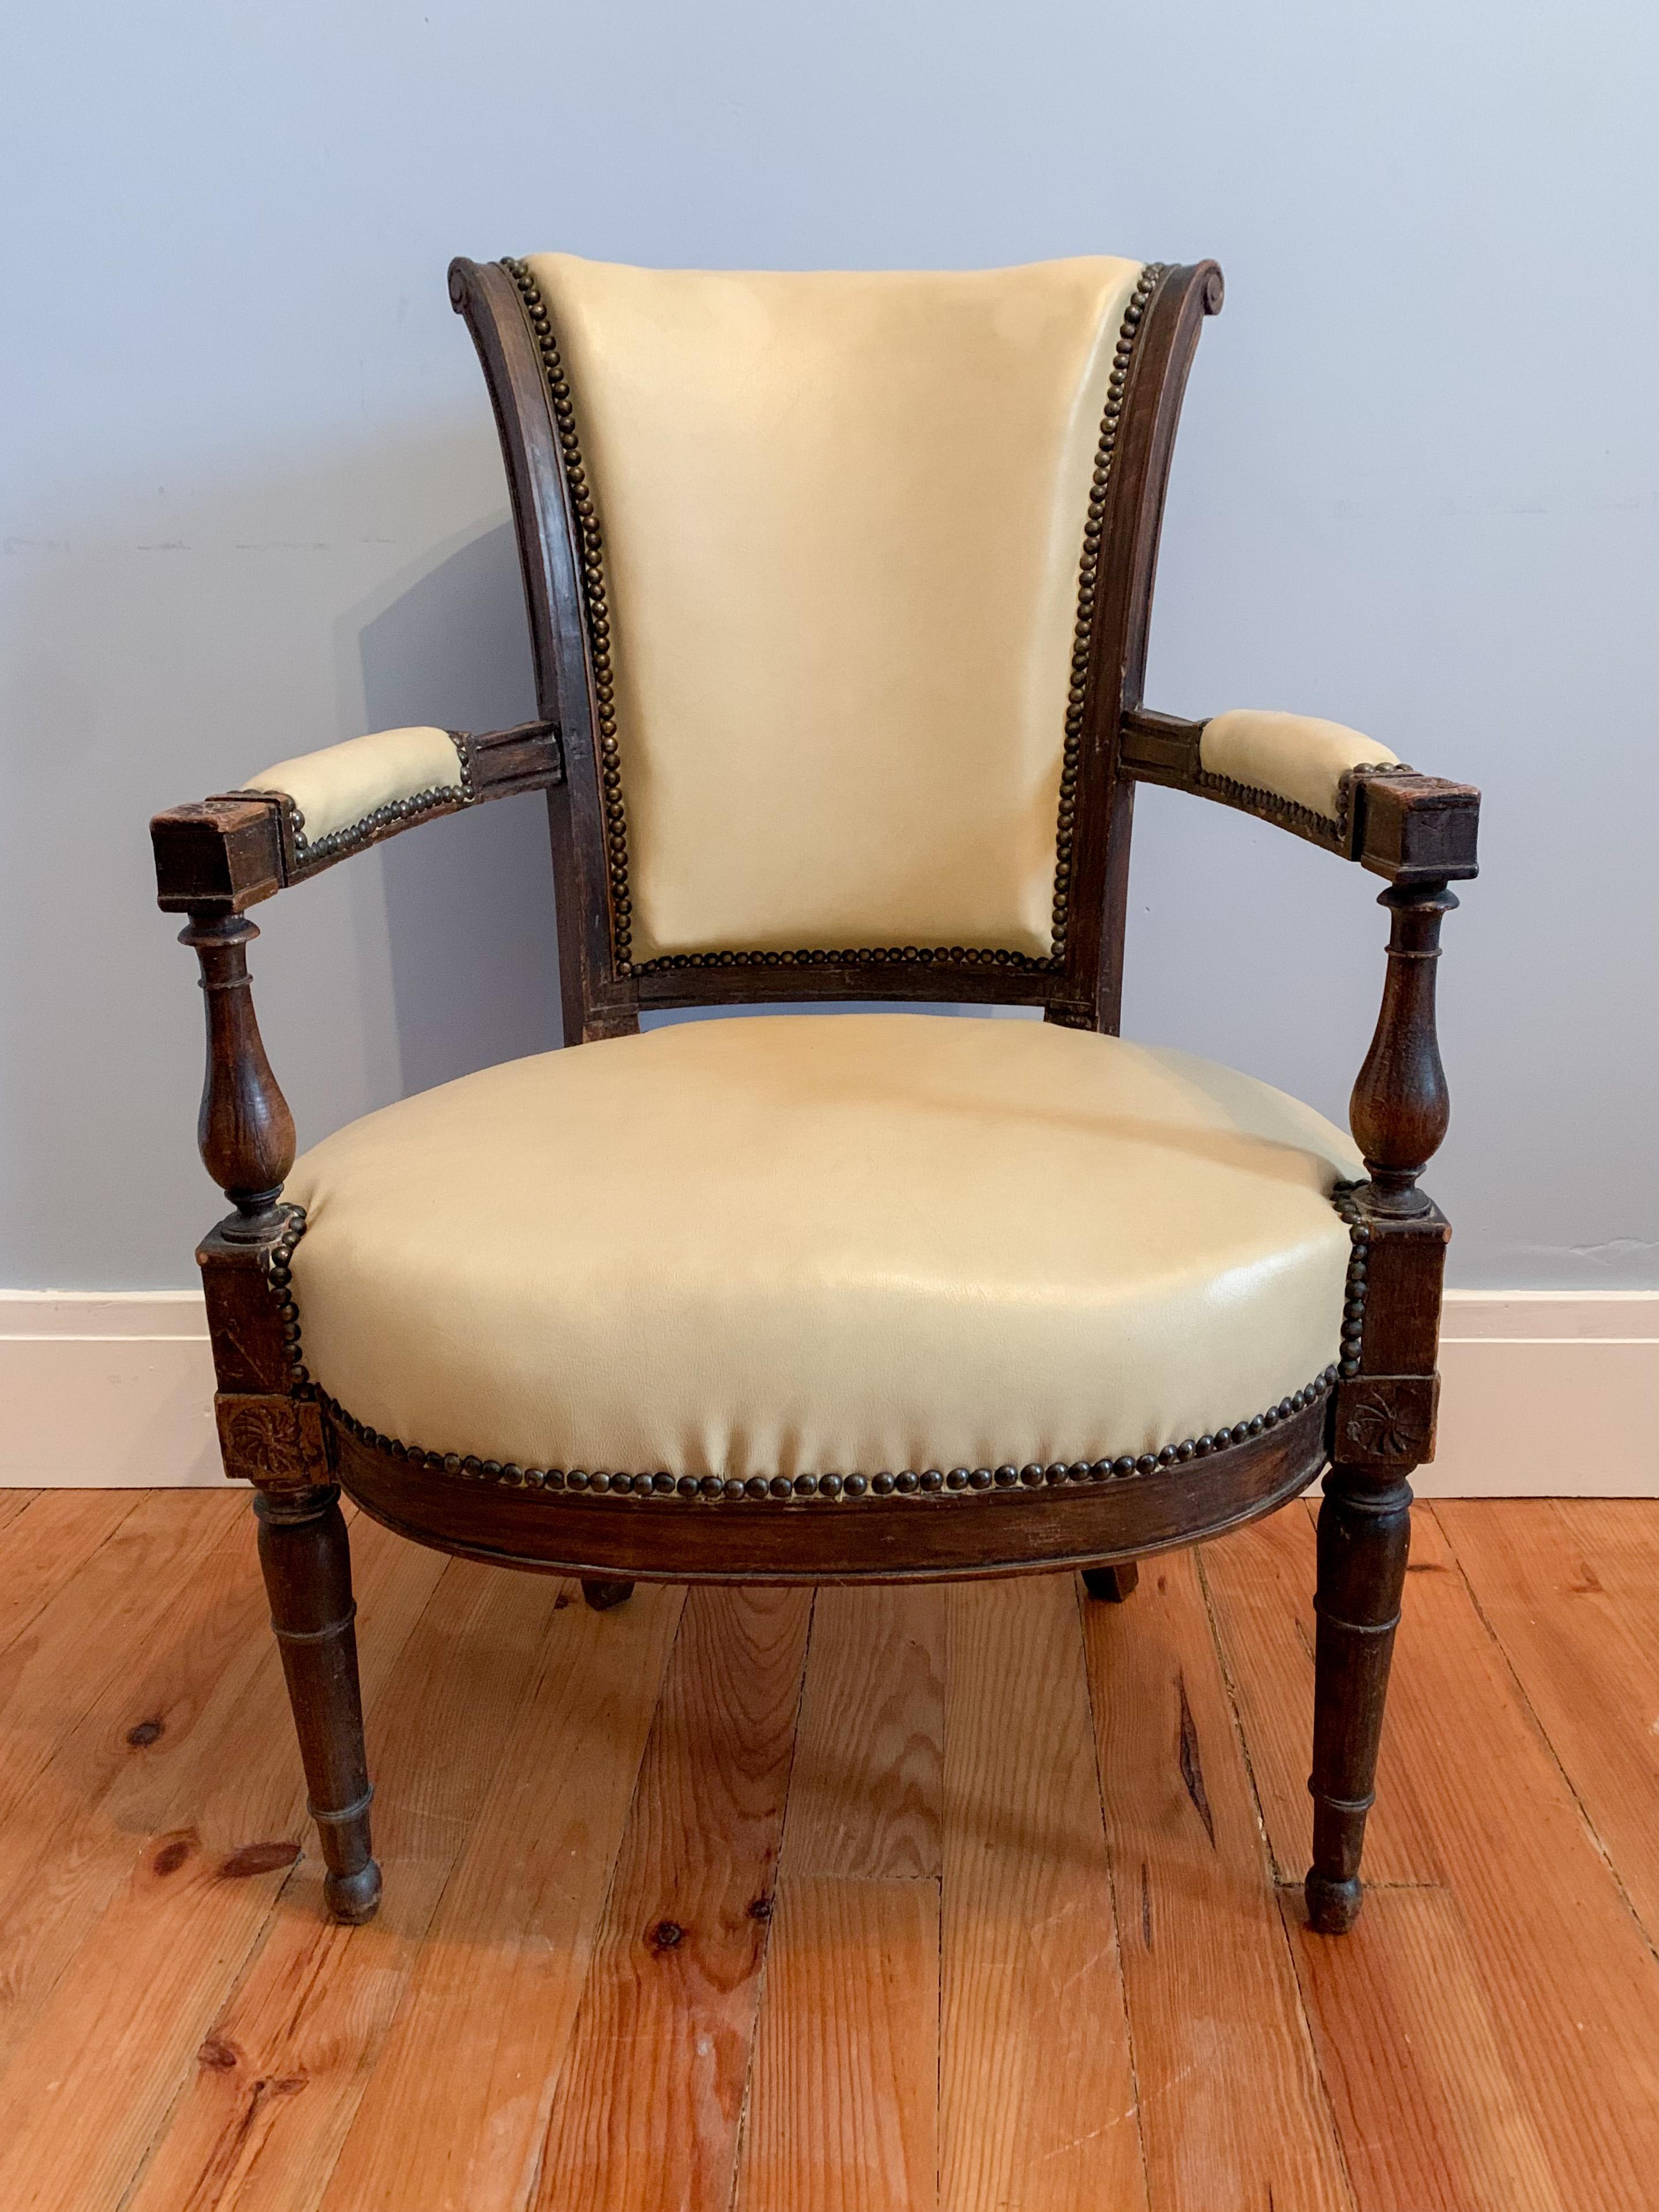 Dieser schöne Stuhl im Directoire-Stil zeichnet sich durch gerade und einfache Formen aus. Die Stützen sind aus gedrechseltem Holz mit floralen Motiven auf den Verbindungswürfeln (Sitz und Armlehnen). 

Frankreich 19. Jahrhundert.
 